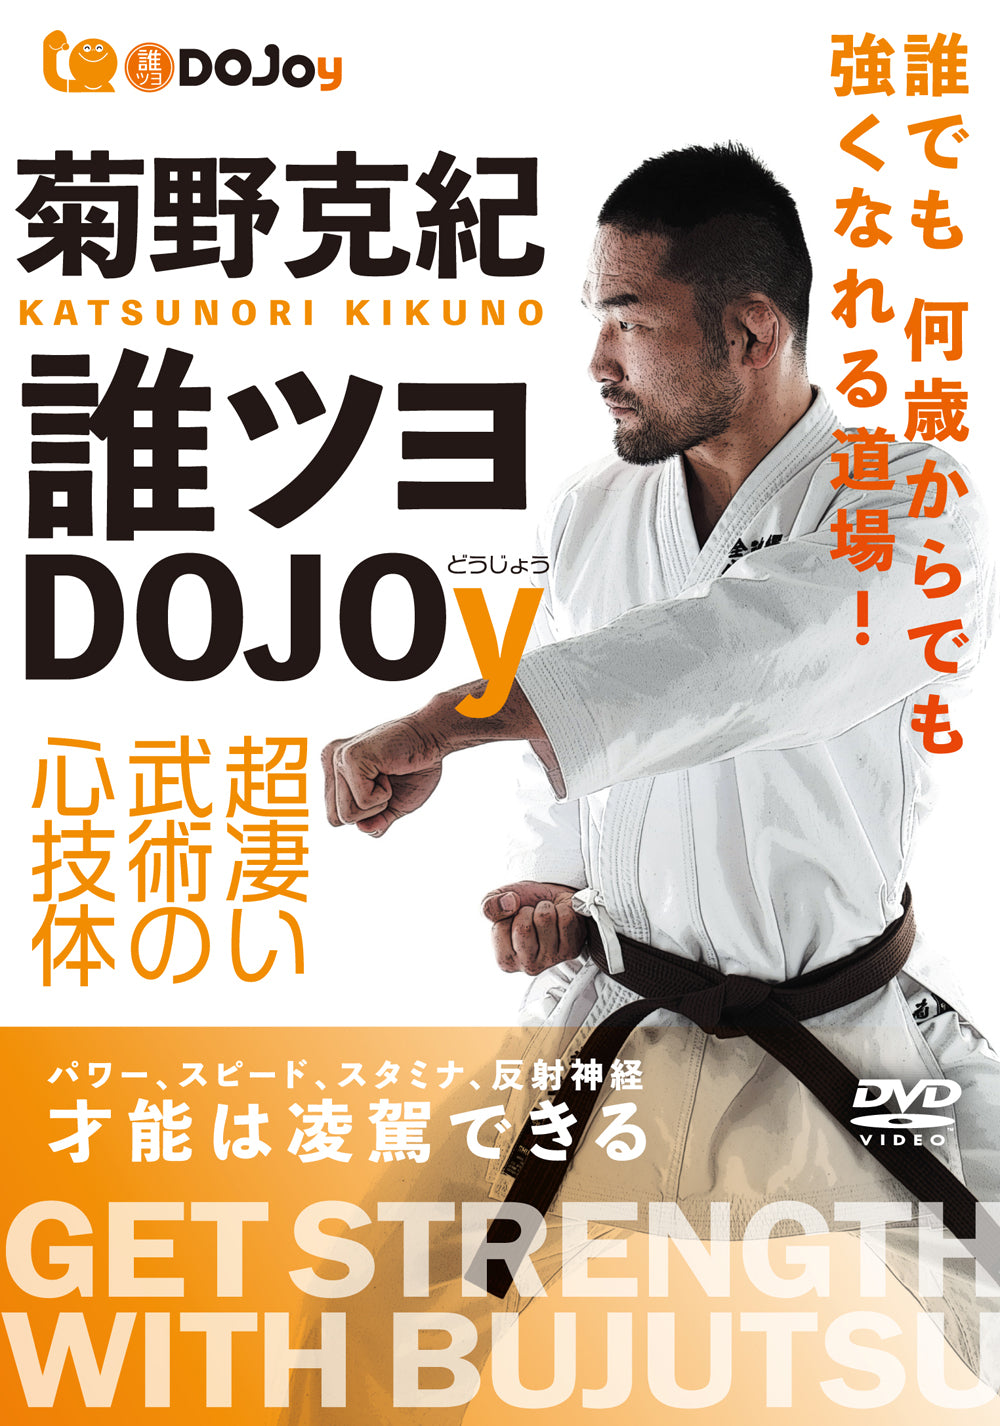 Get Strength with Bujutsu DVD by Katsunori Kikuno